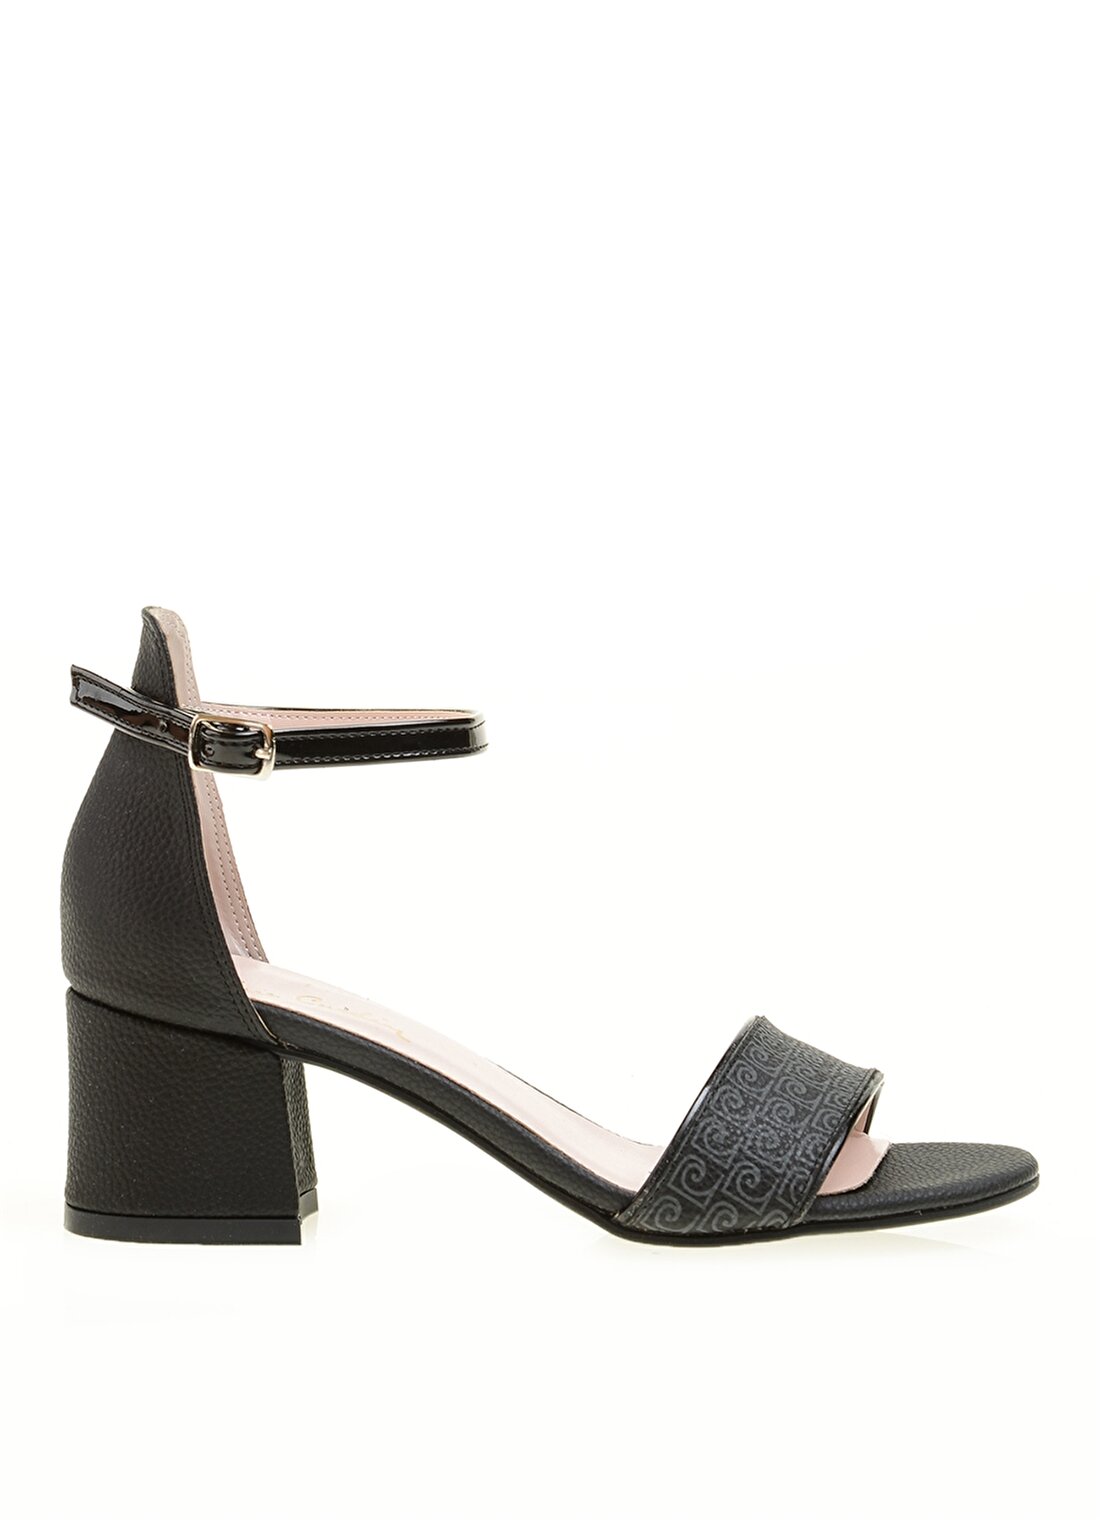 Pierre Cardin 54046 Yazlık Siyah Kadın Topuklu Ayakkabı